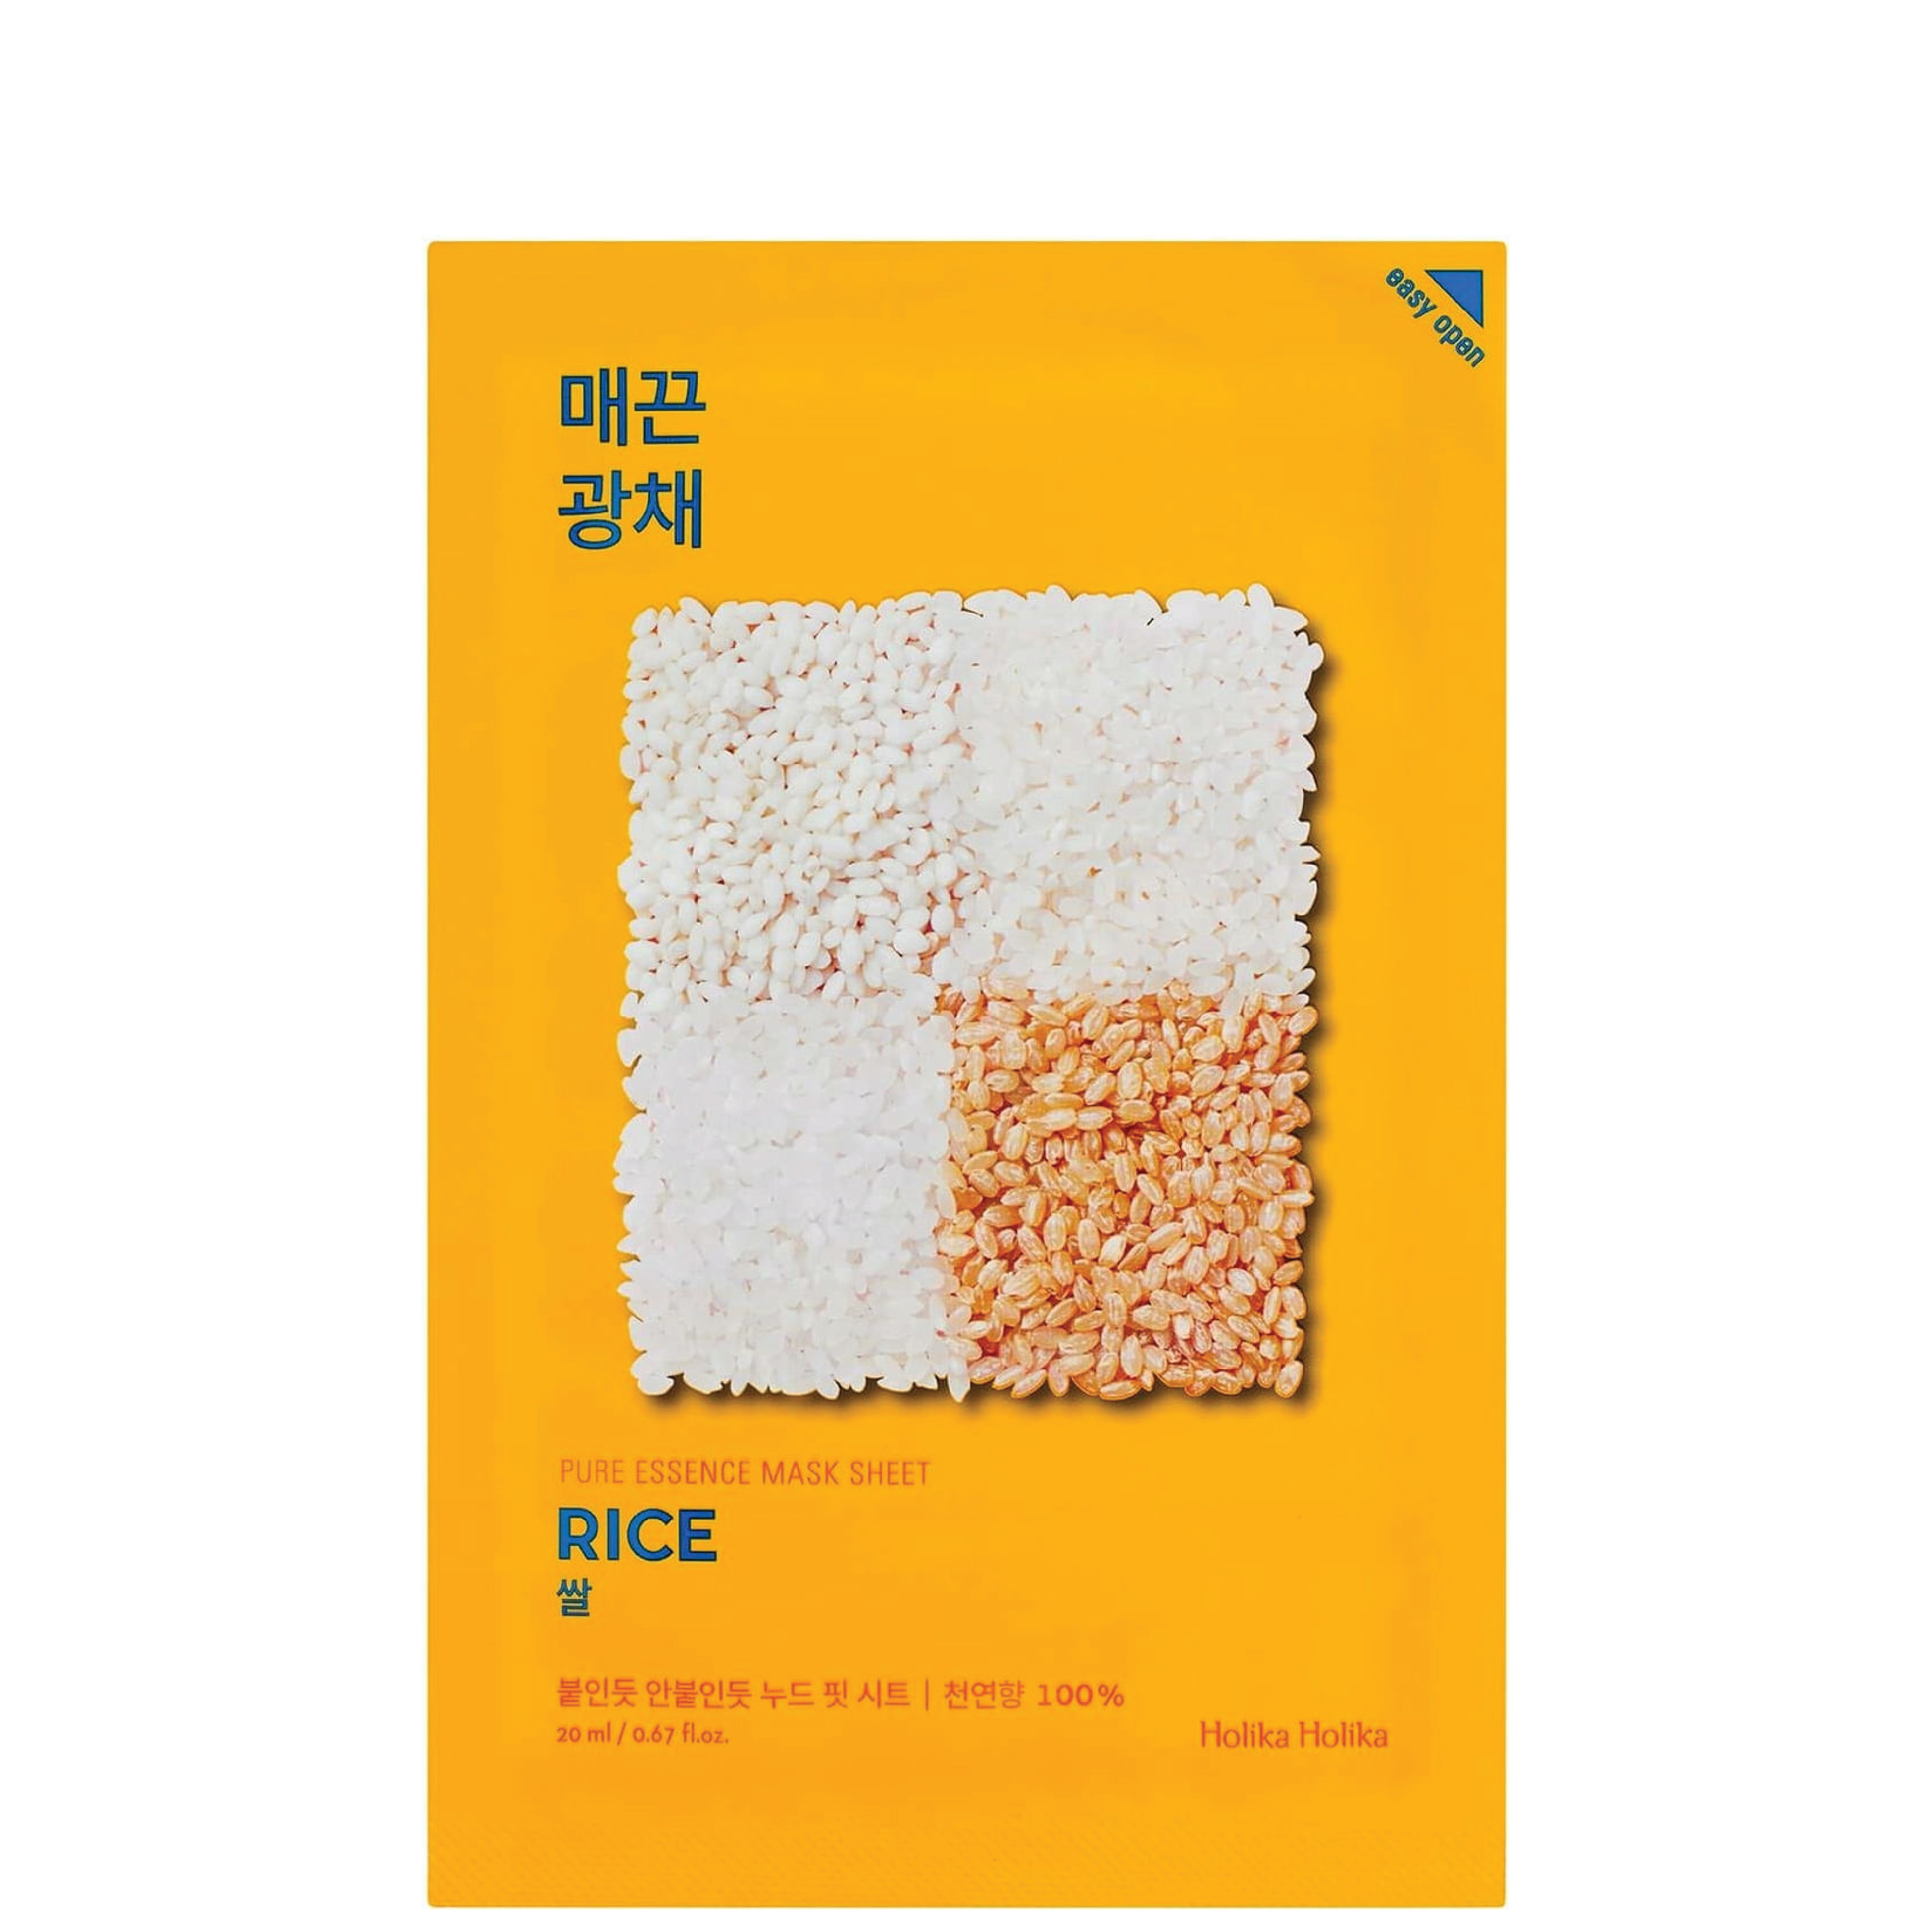 Holika Holika Rice Pure Essence Mask